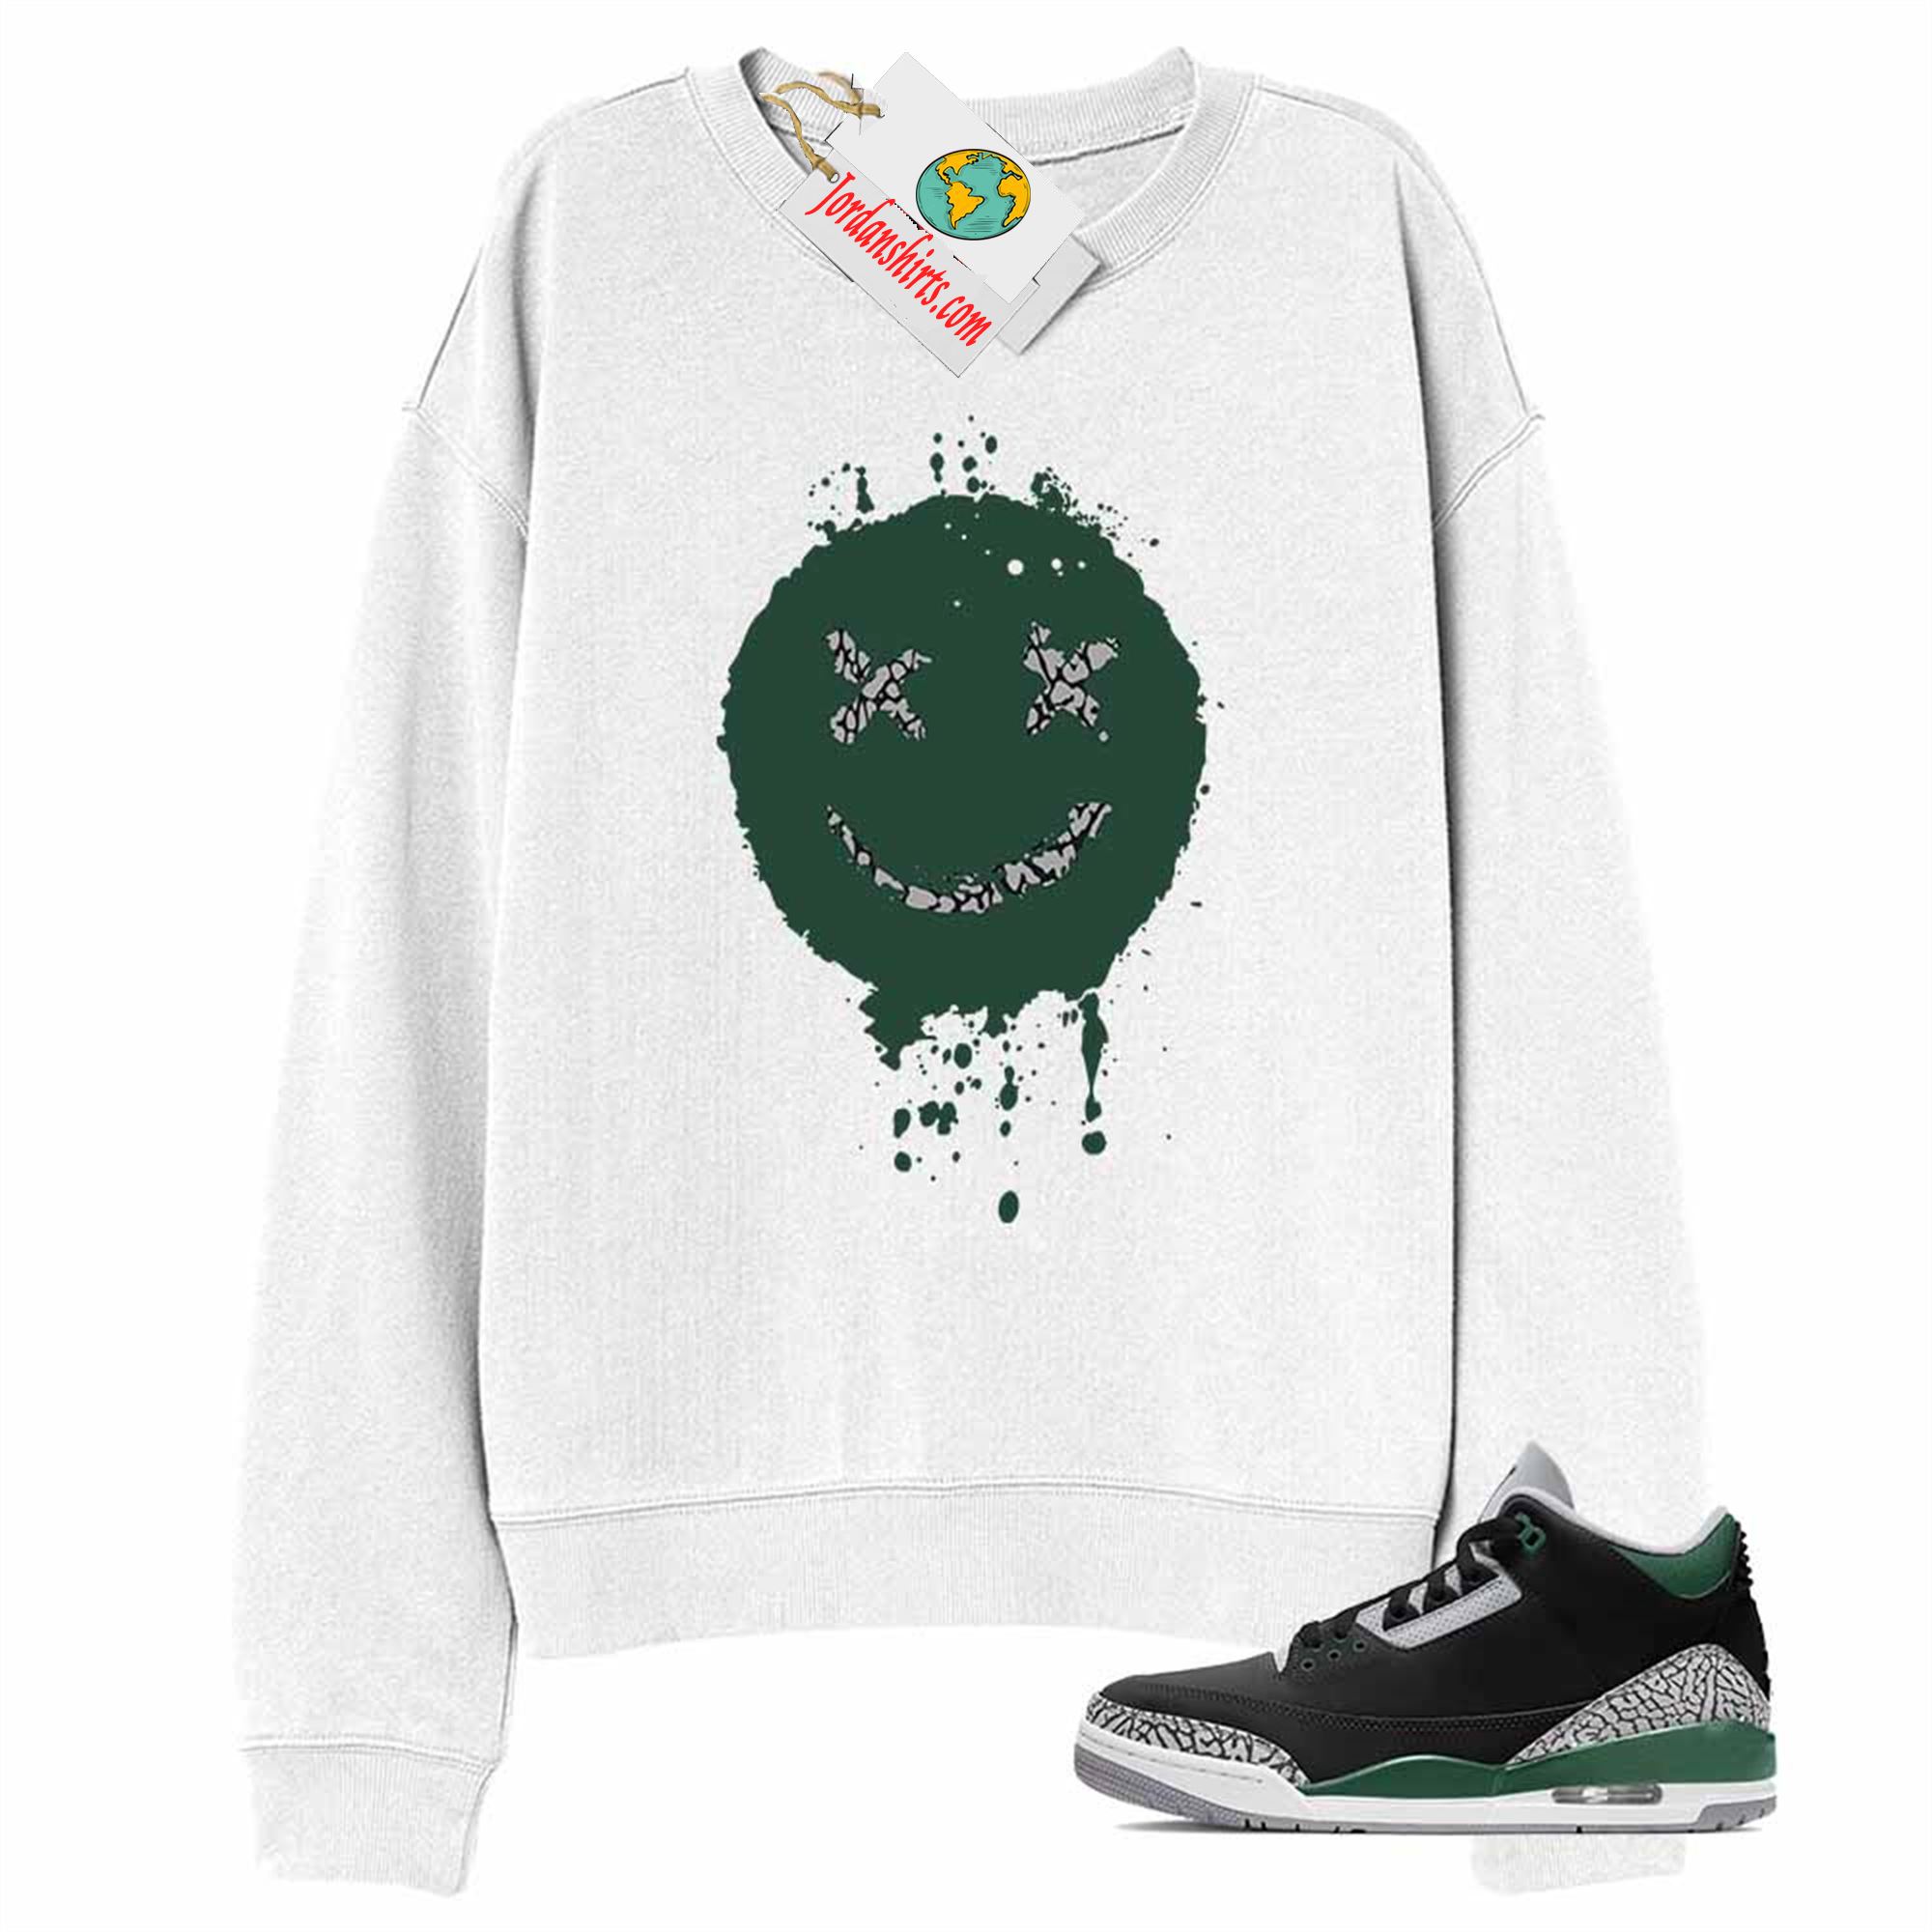 Jordan 3 Sweatshirt, Smile Happy Face White Sweatshirt Air Jordan 3 Pine Green 3s Full Size Up To 5xl